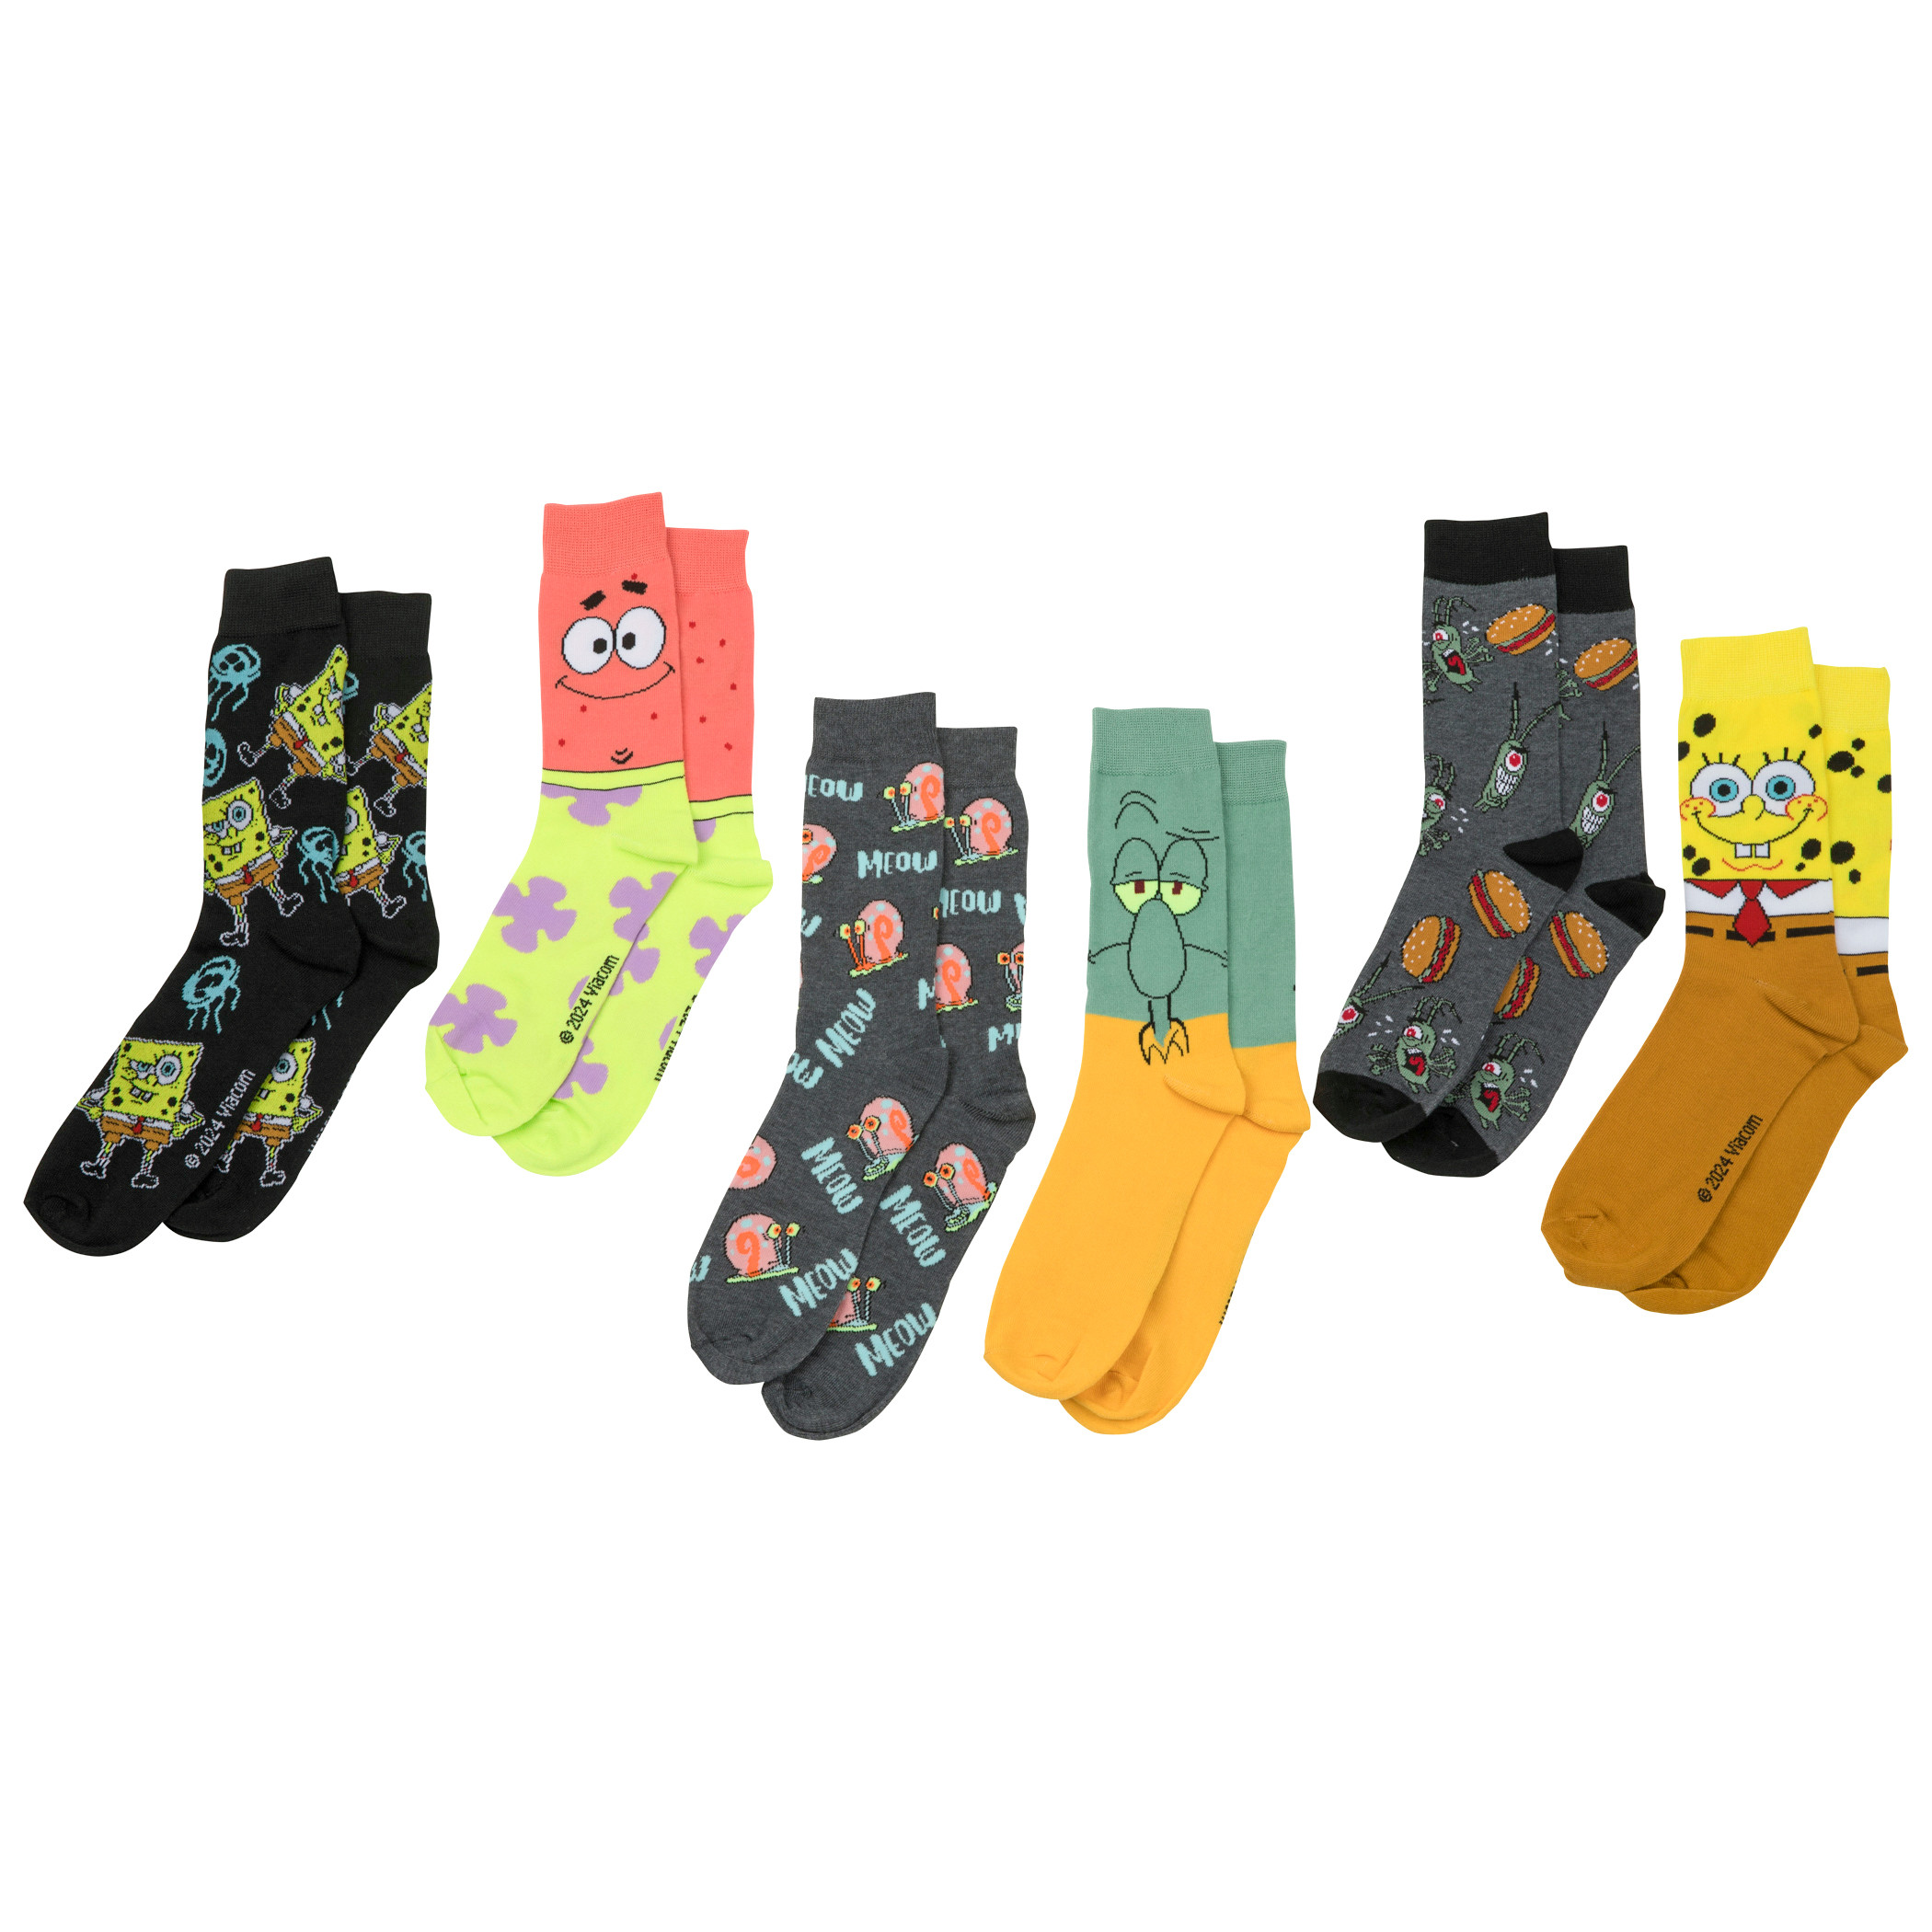 SpongeBob SquarePants Assorted Icons Men's 6-Pair Pack of Crew Socks